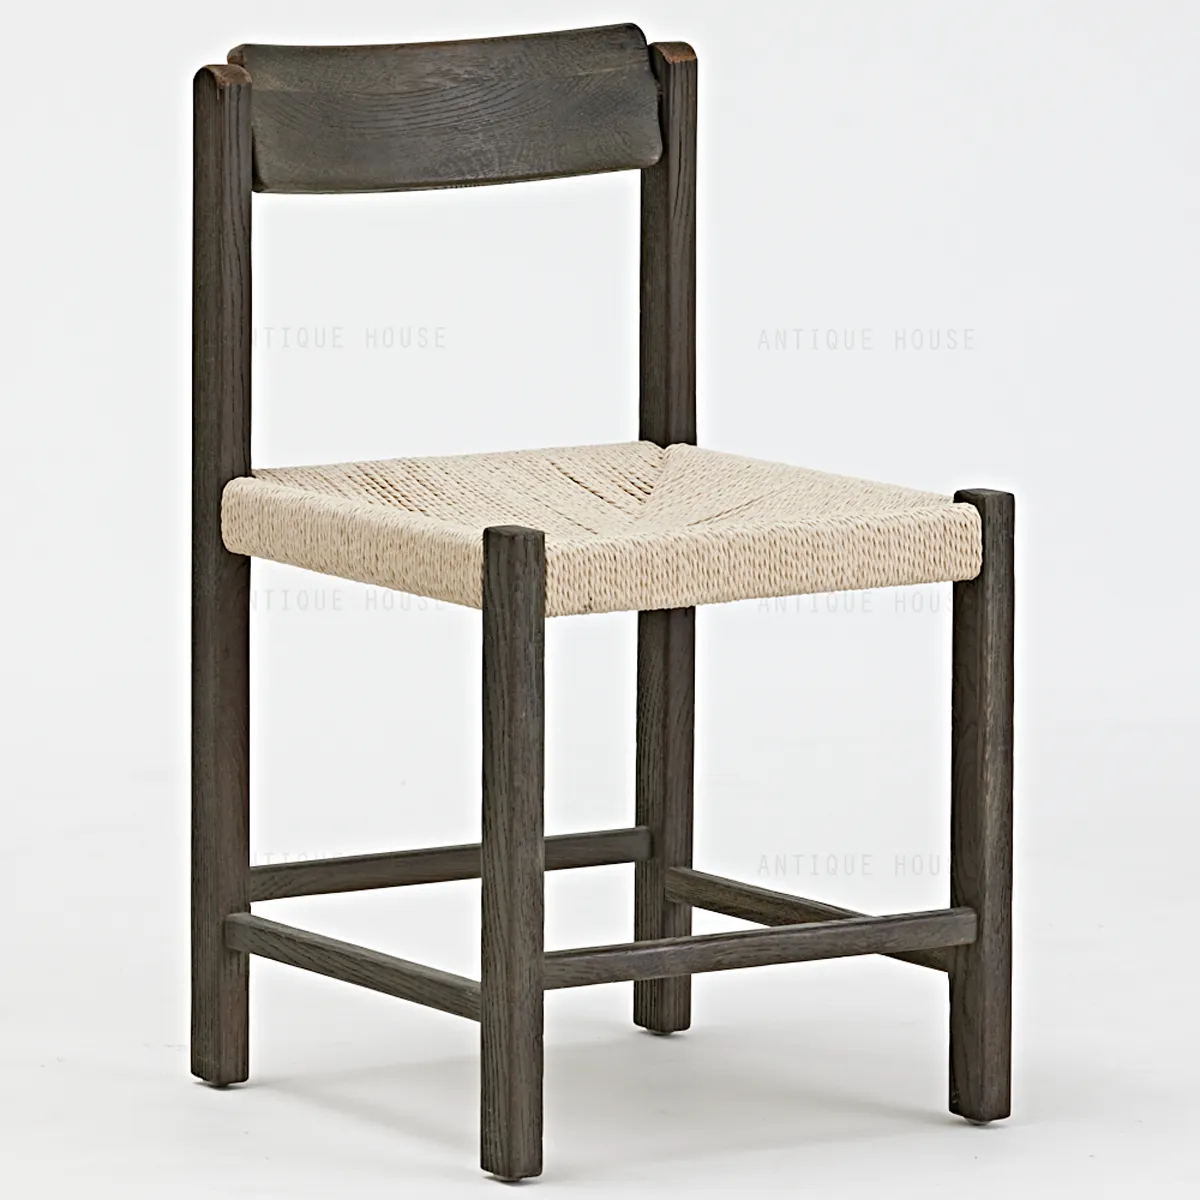 Mobili nordici mobili minimalisti rovere nordico in legno sala da pranzo sedie moderna sedia da pranzo